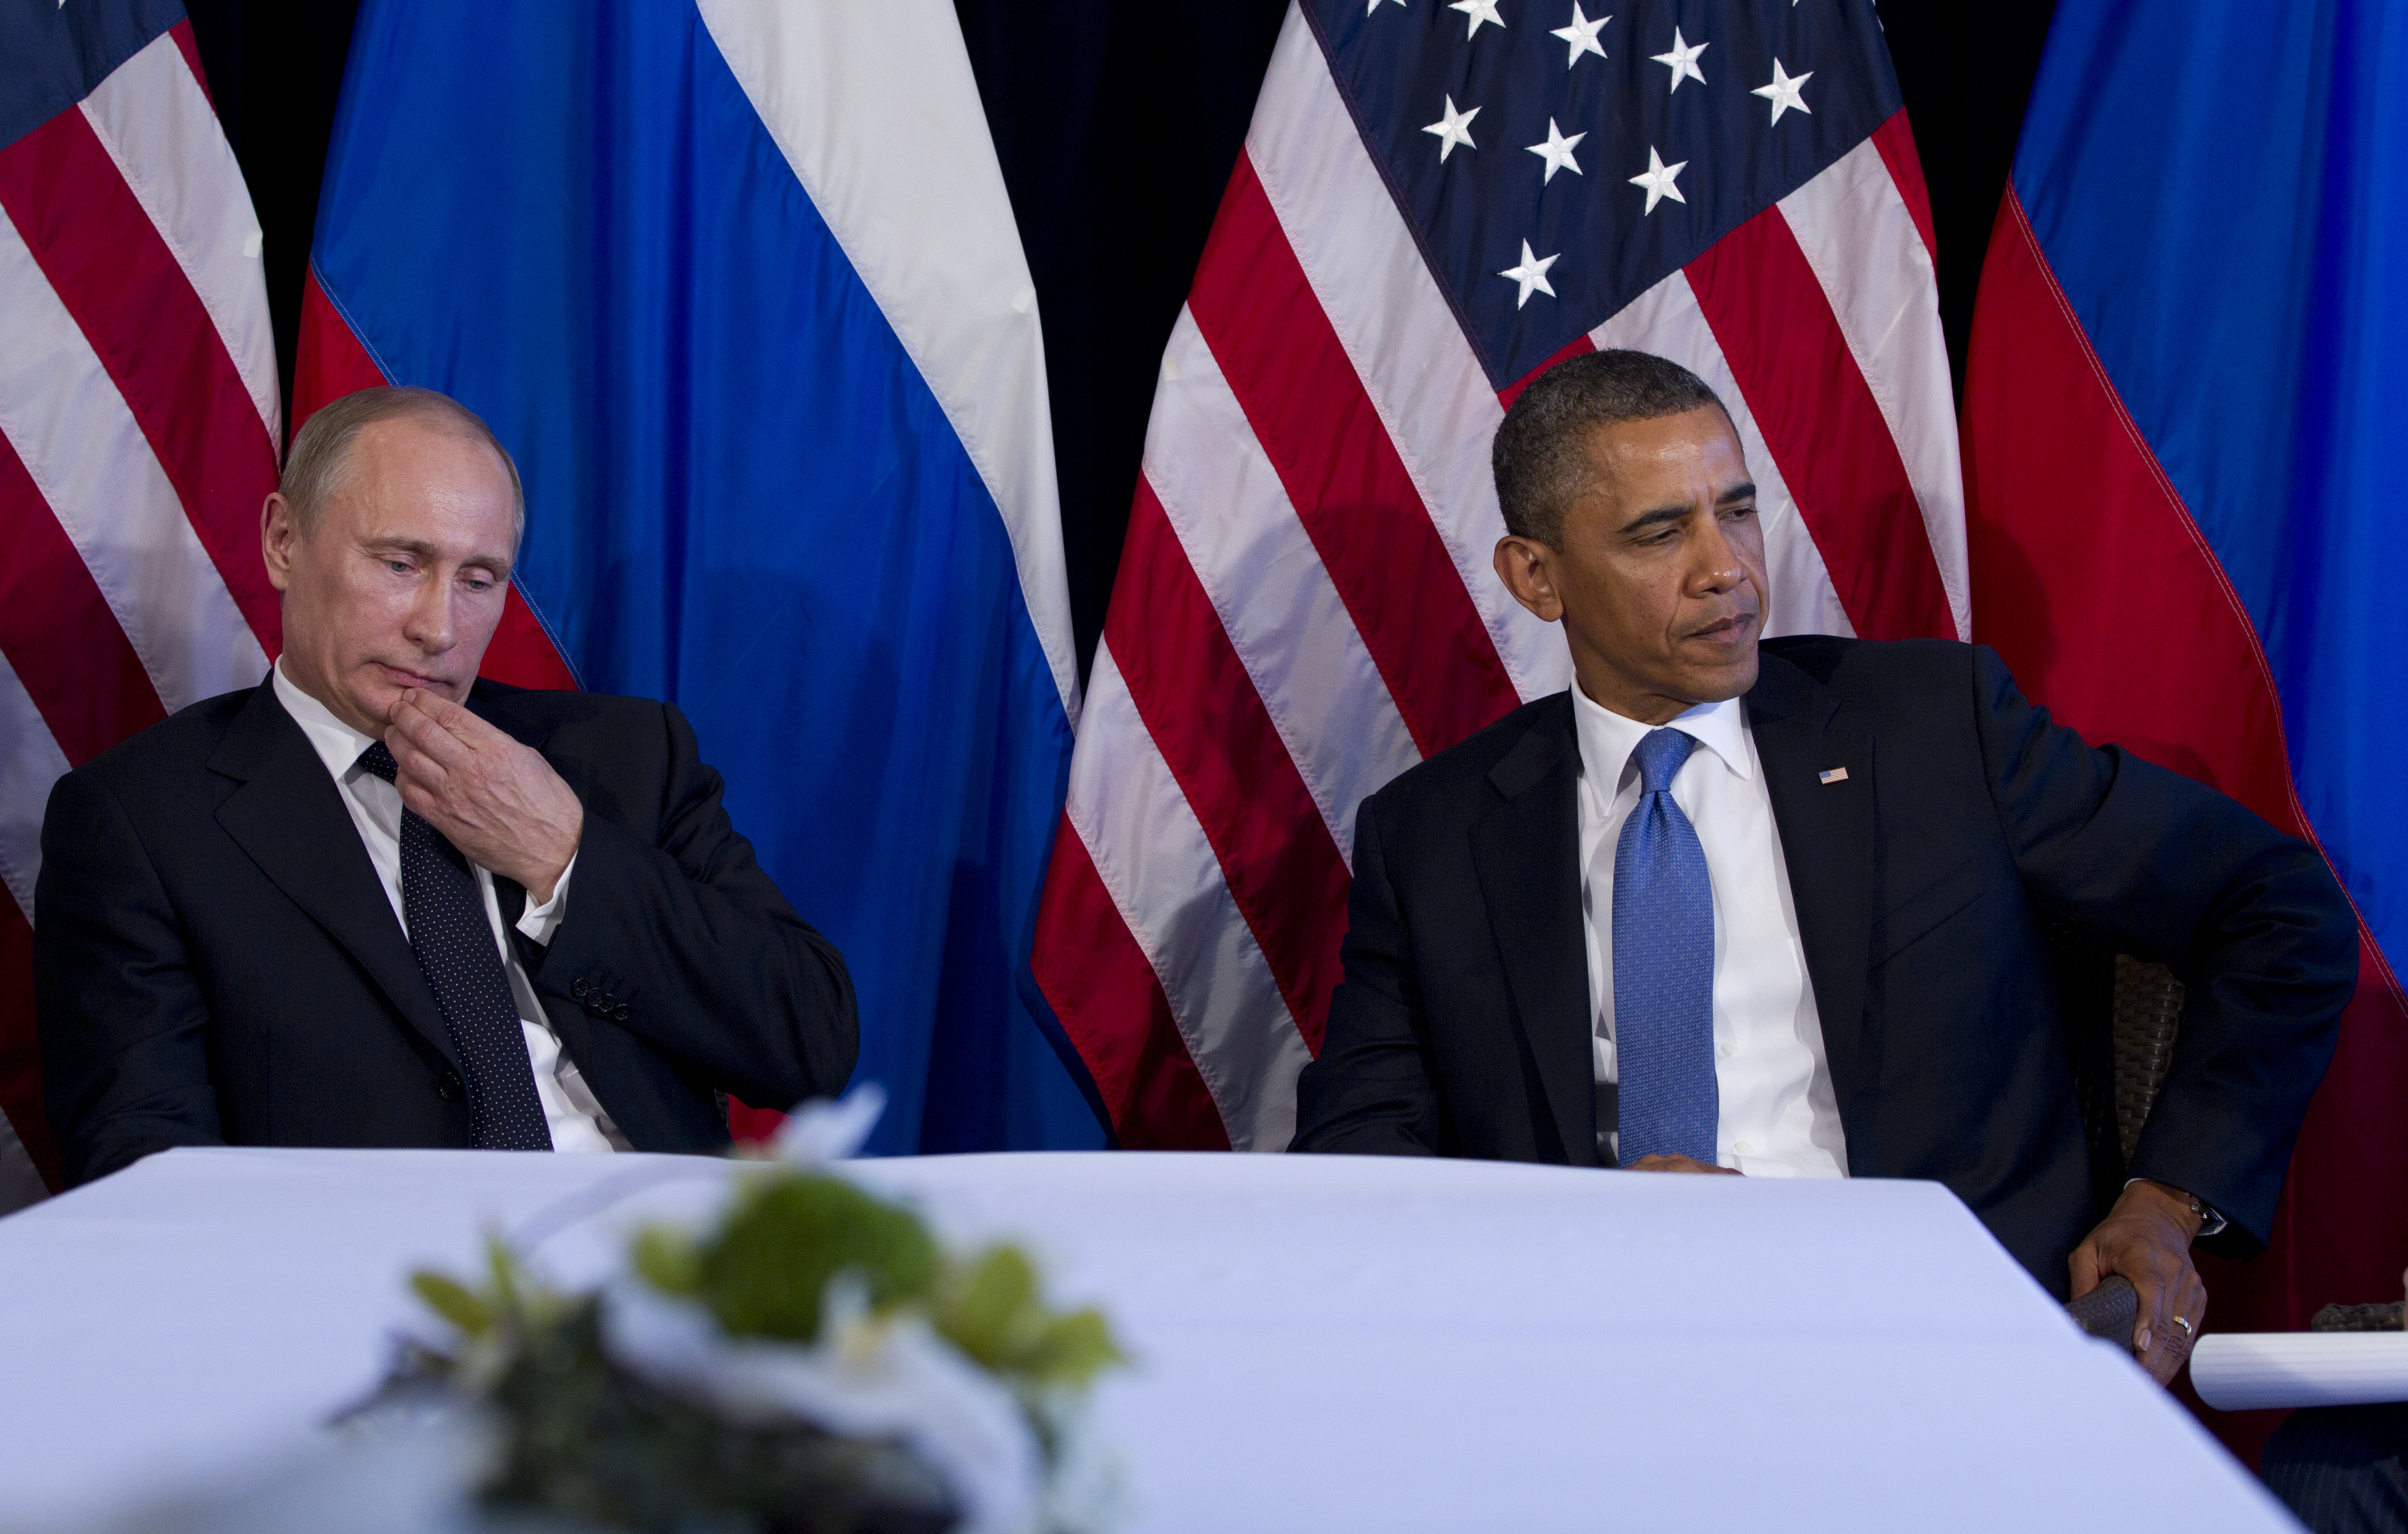 Putin y Obama durante la reunión en la cumbre del G20 en Los Cabos. Fuente: AP.